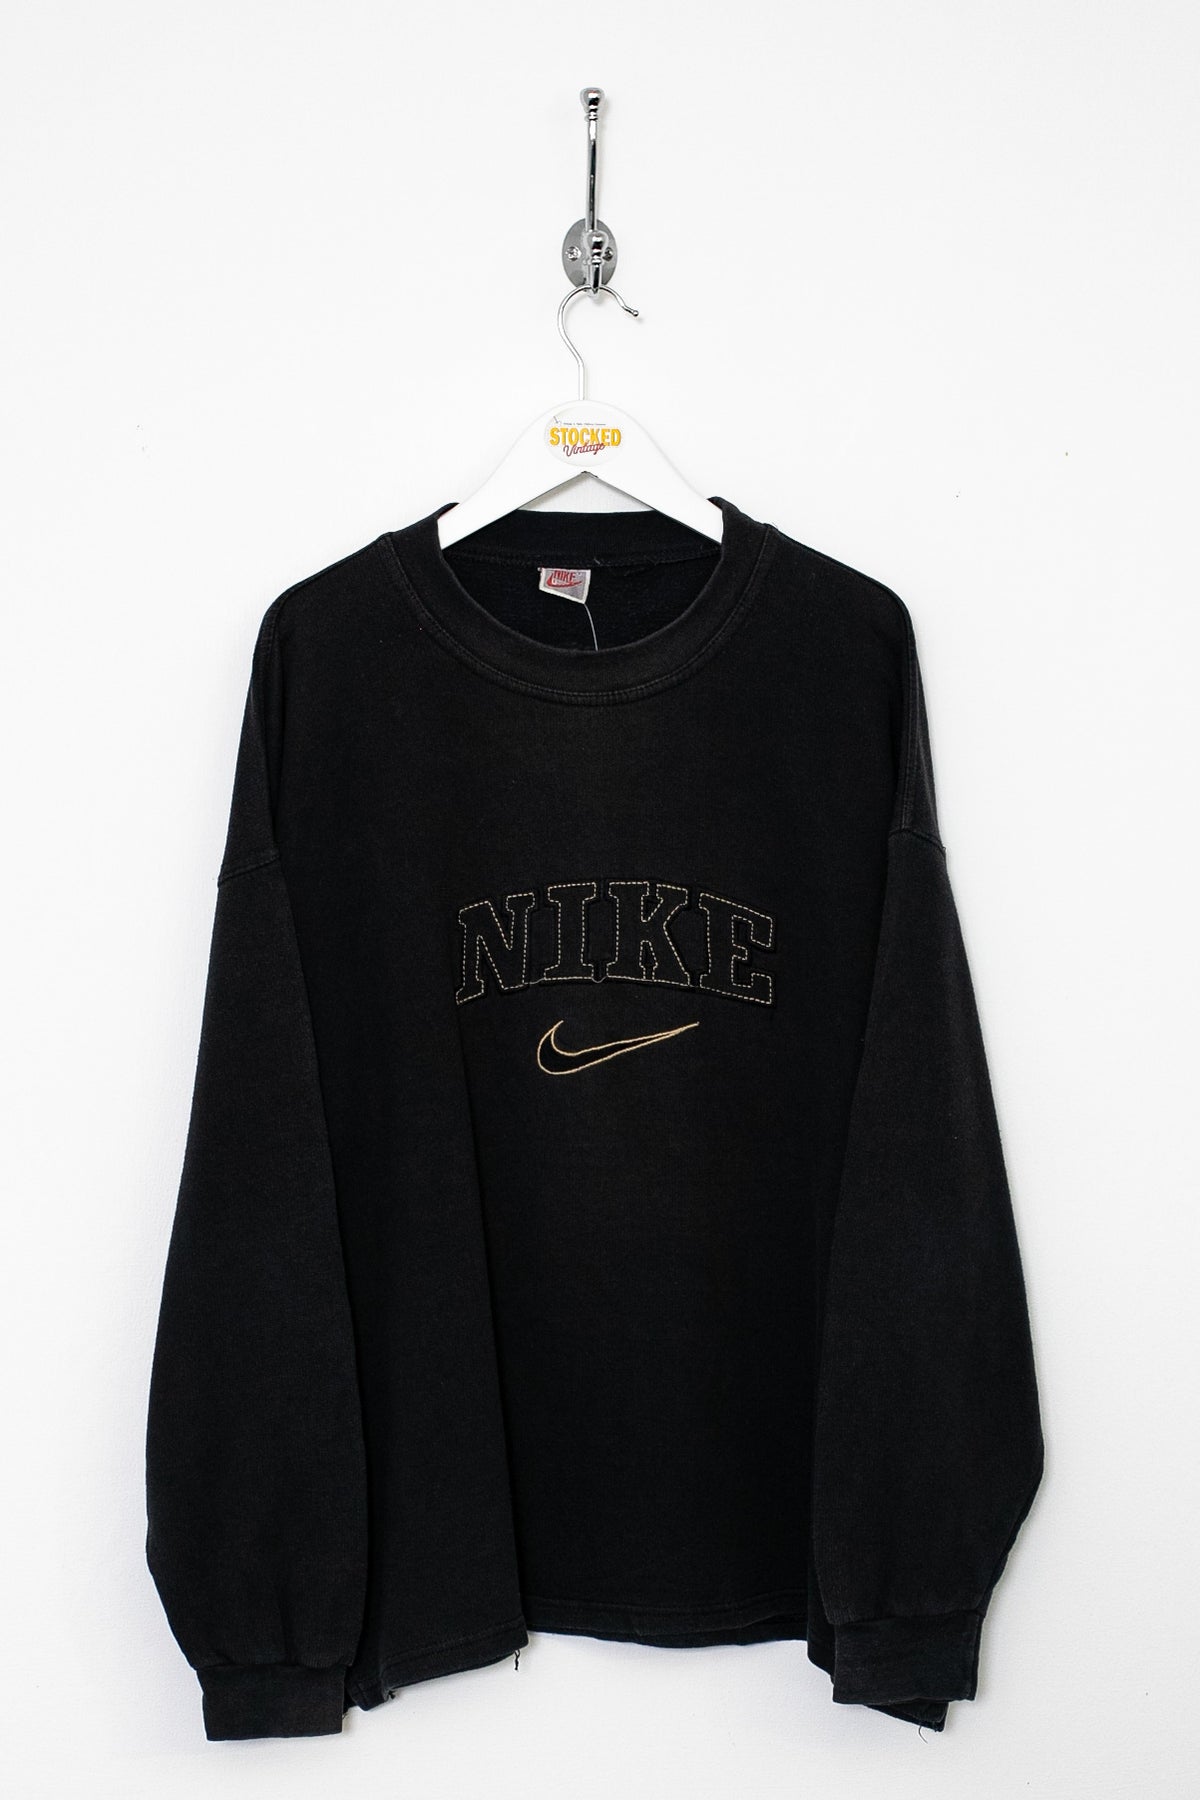 Bootleg Nike Sweatshirt (M)